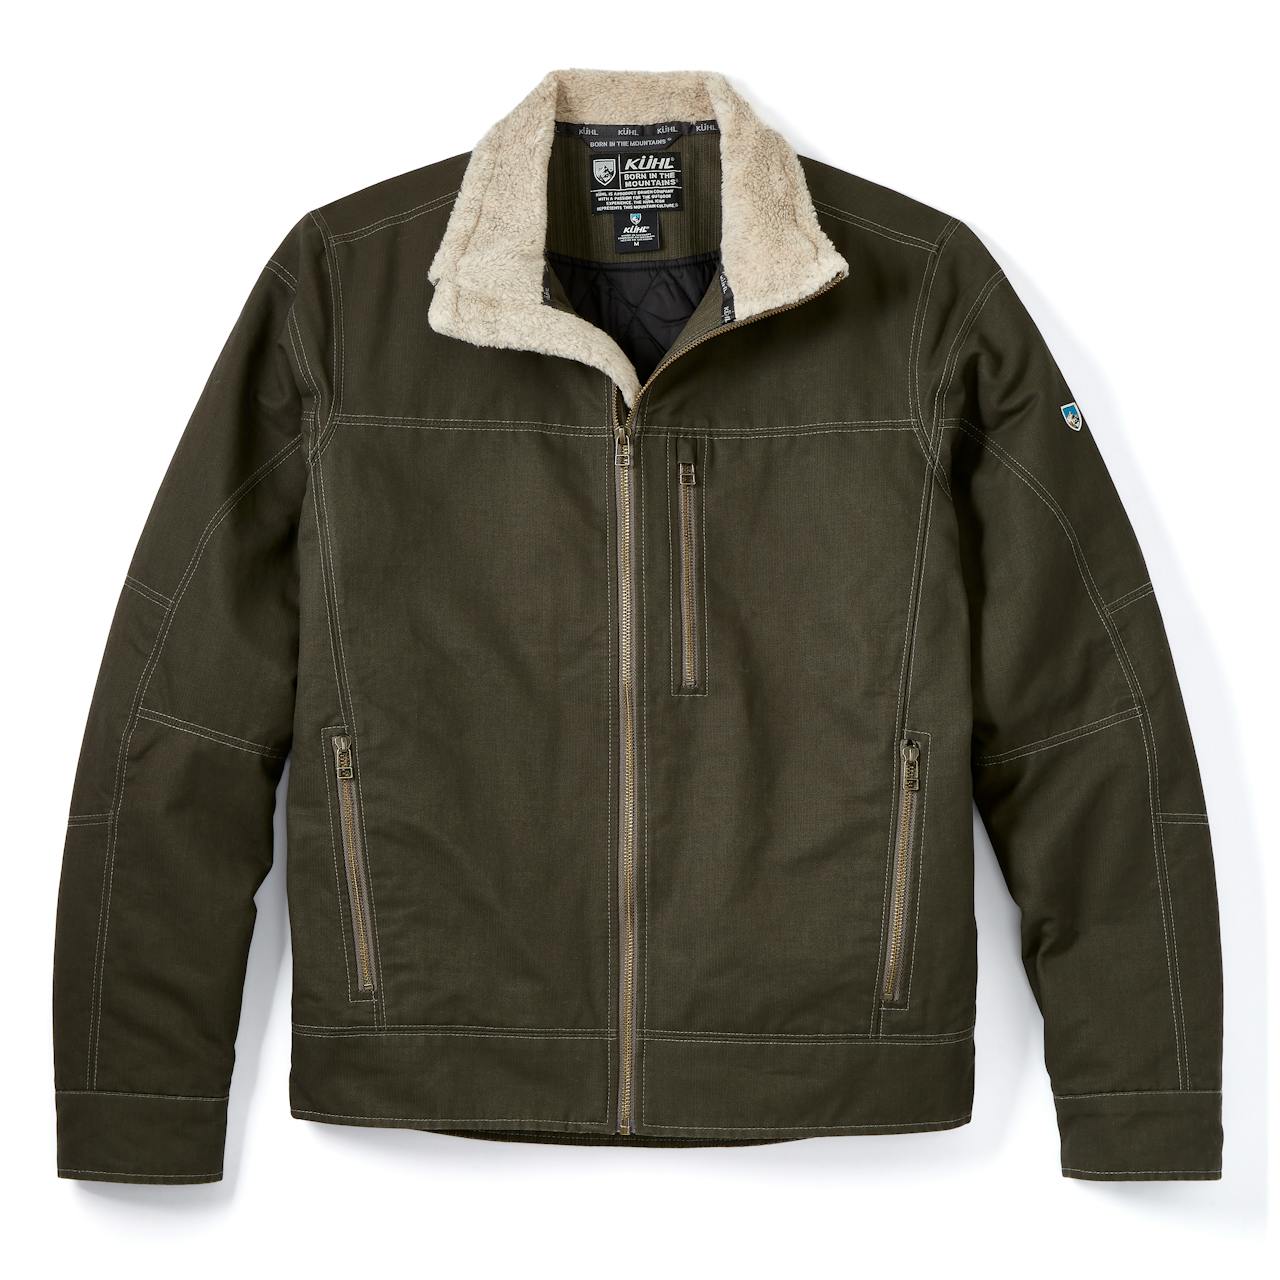 Kuhl, Jackets & Coats, Kuhl Heathered Grey Alaska Hooded Sherpa Lined Zip  Up Vest Small Pockets 421